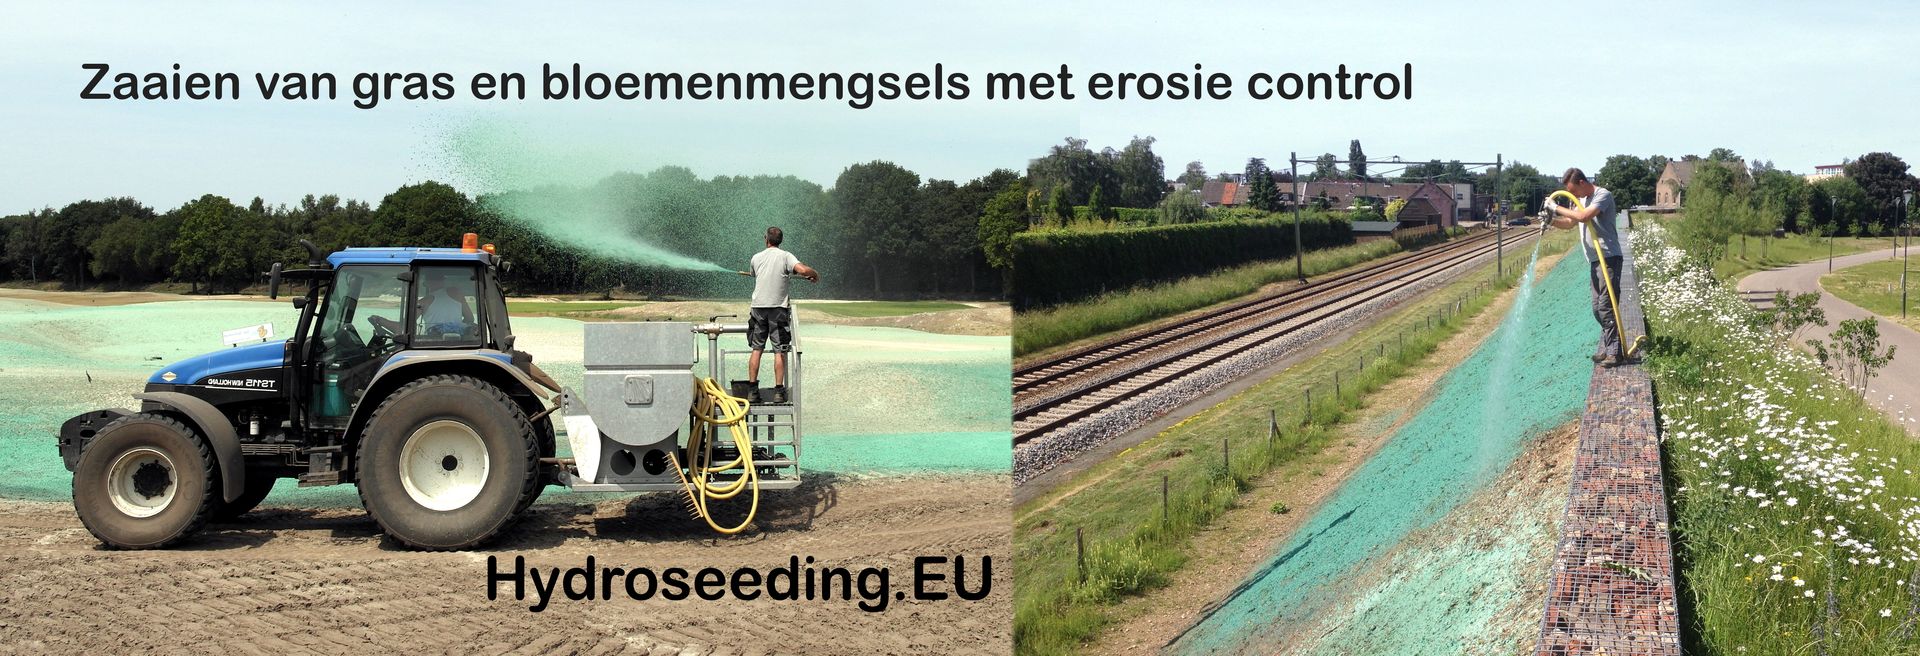 Hydroseeding NL